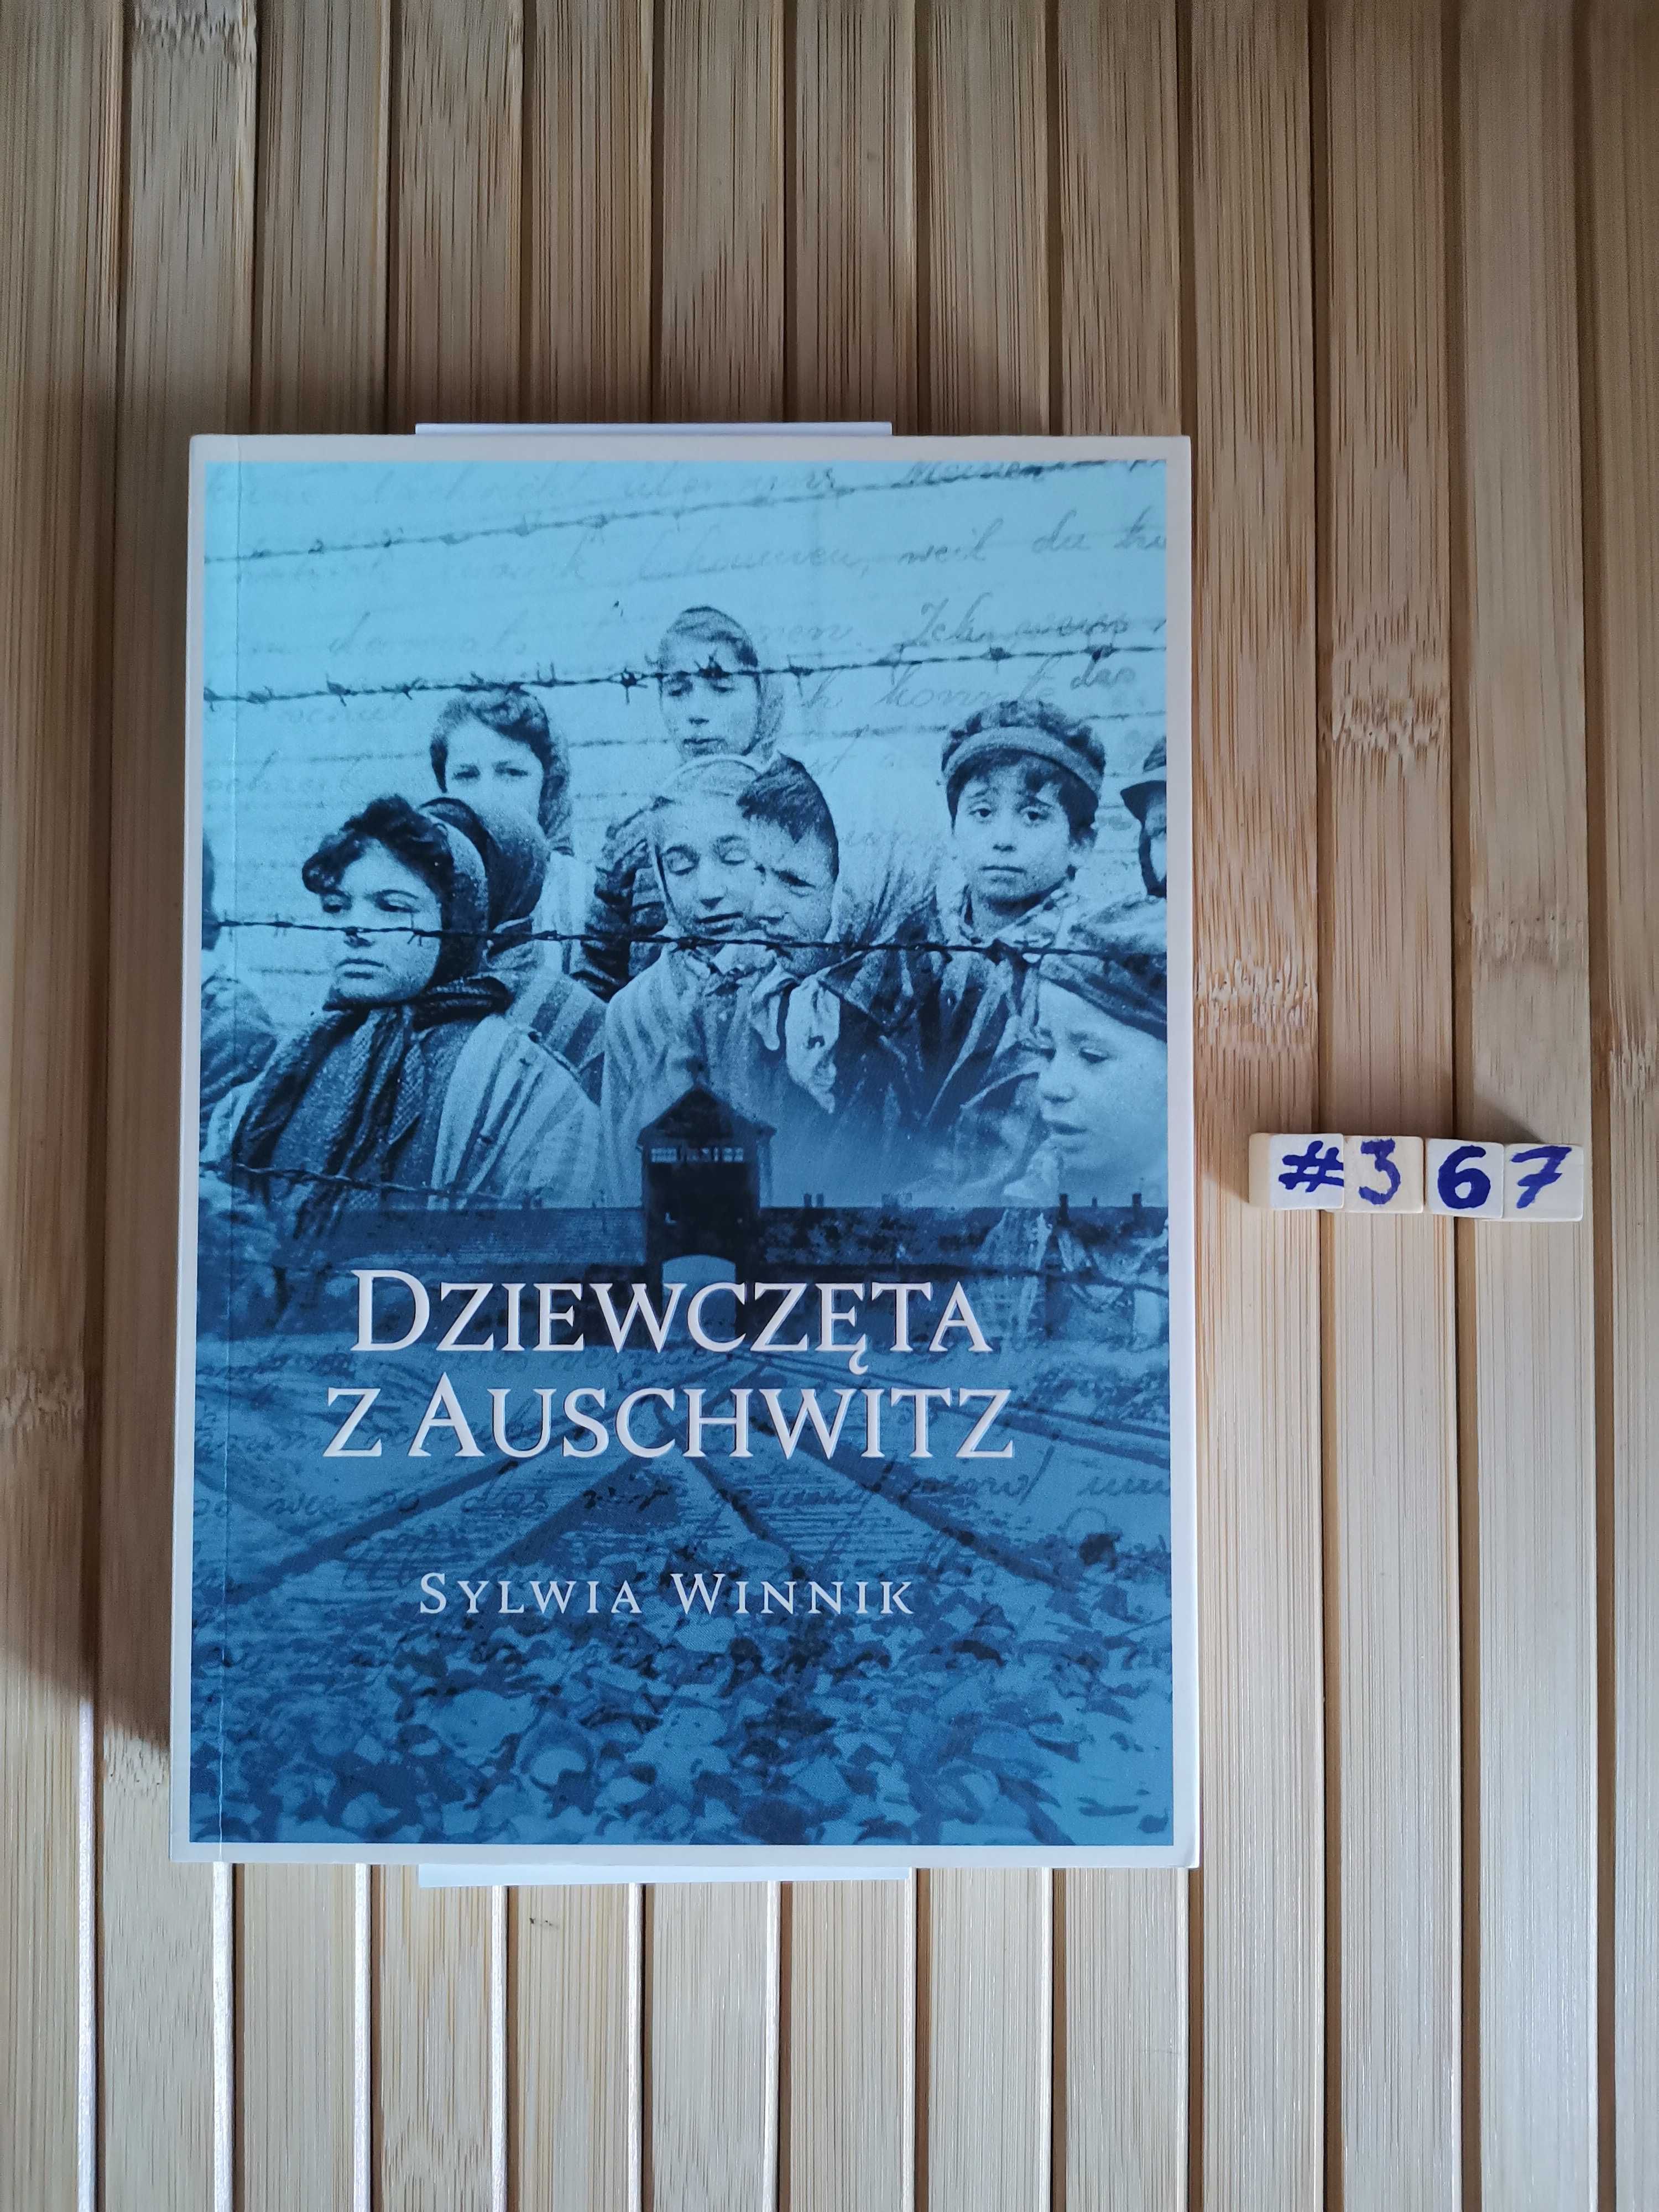 Winnik Dziewczęta z Auschwitz + autograf Real foty